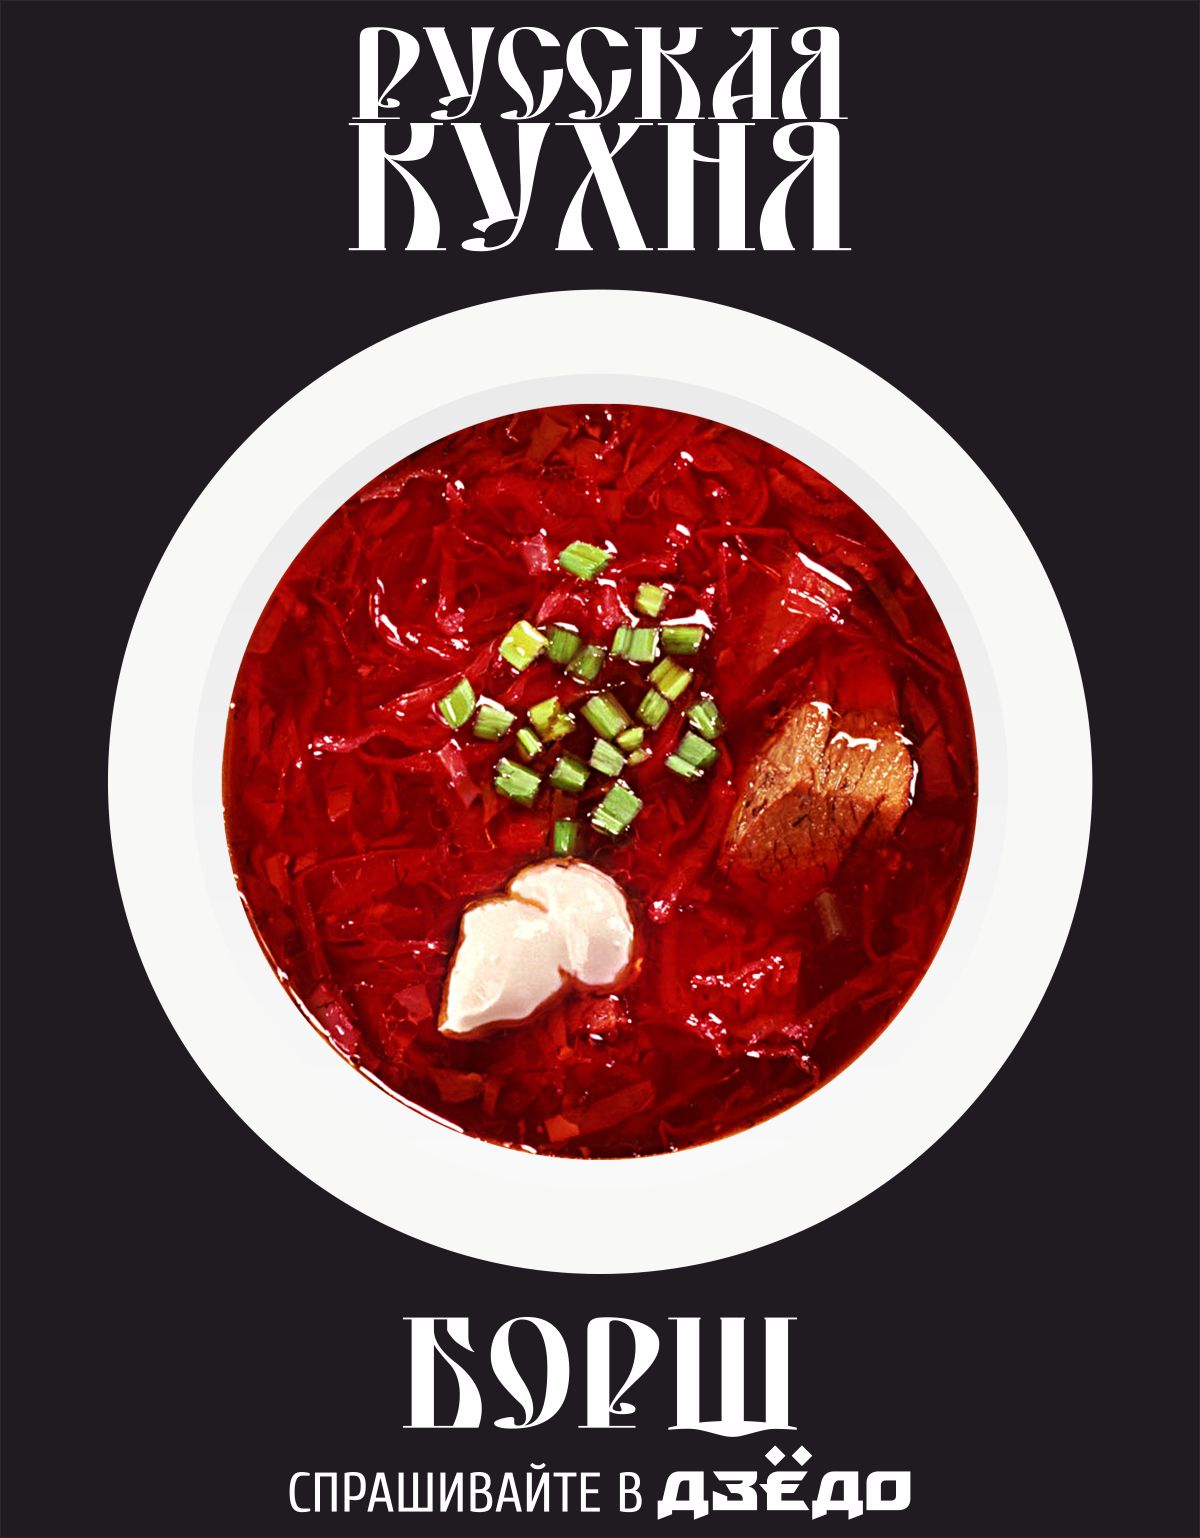 меню русской кухни в кафе